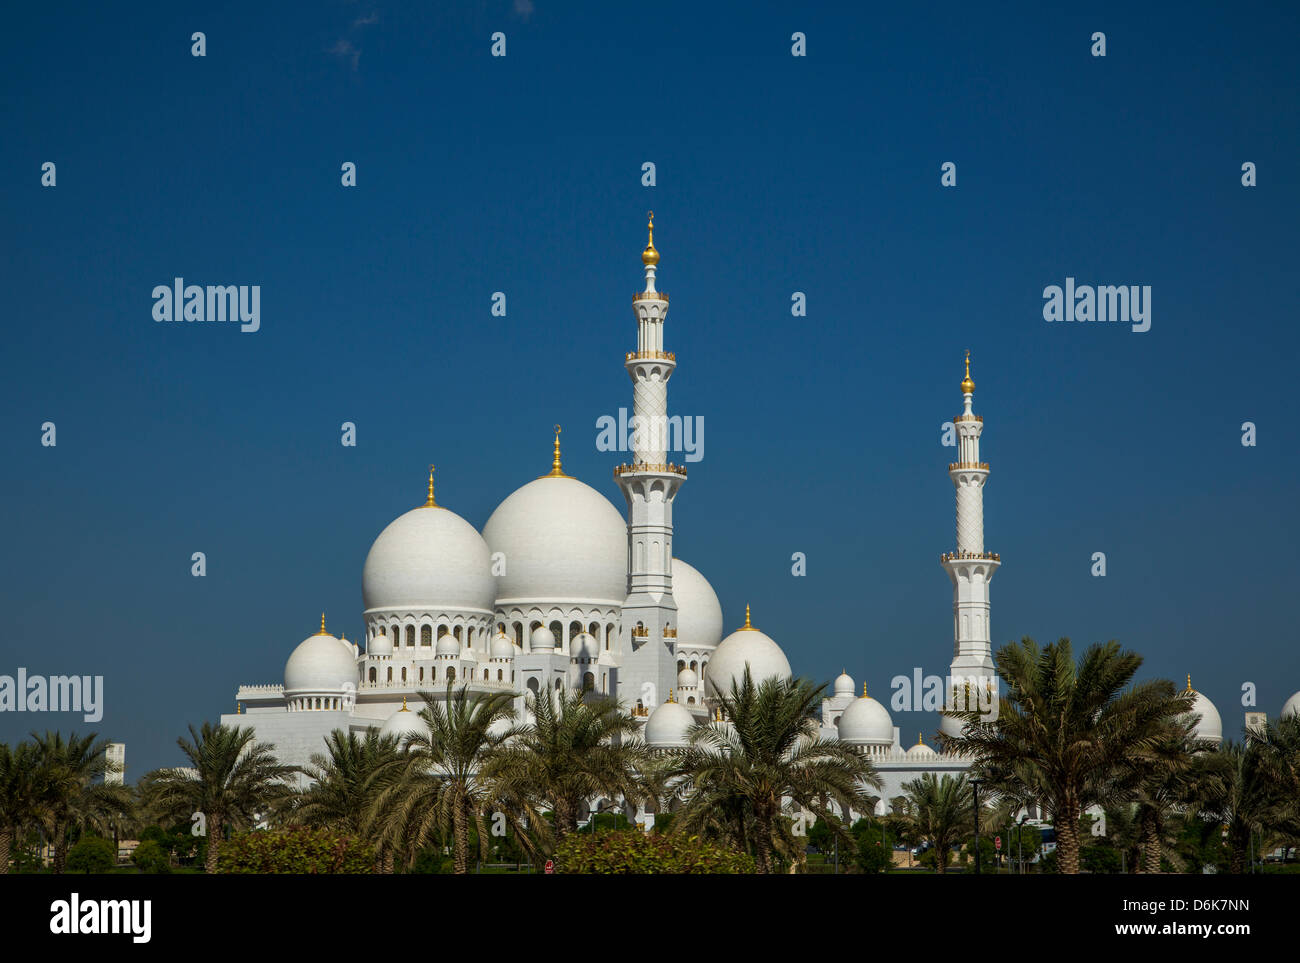 Abu Dhabi, United Arab Emirates, Middle East Stock Photo